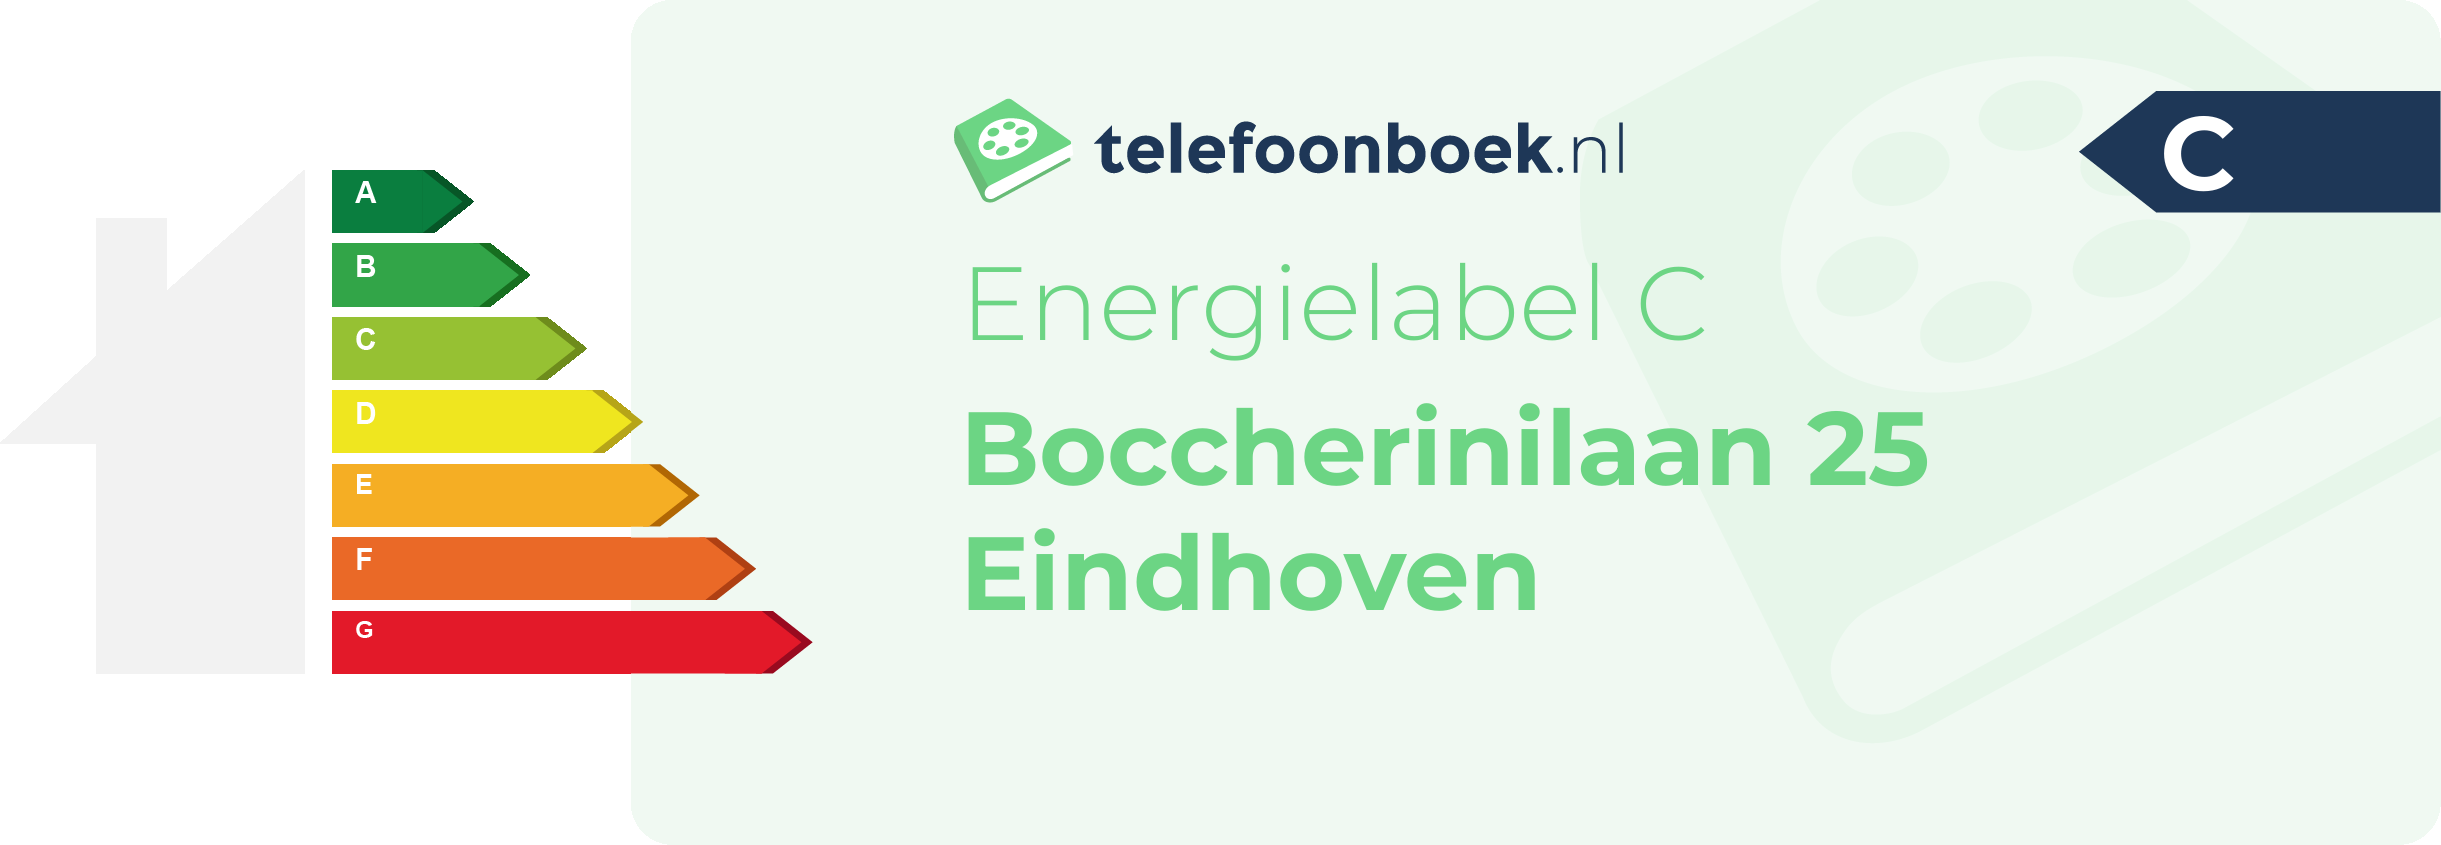 Energielabel Boccherinilaan 25 Eindhoven